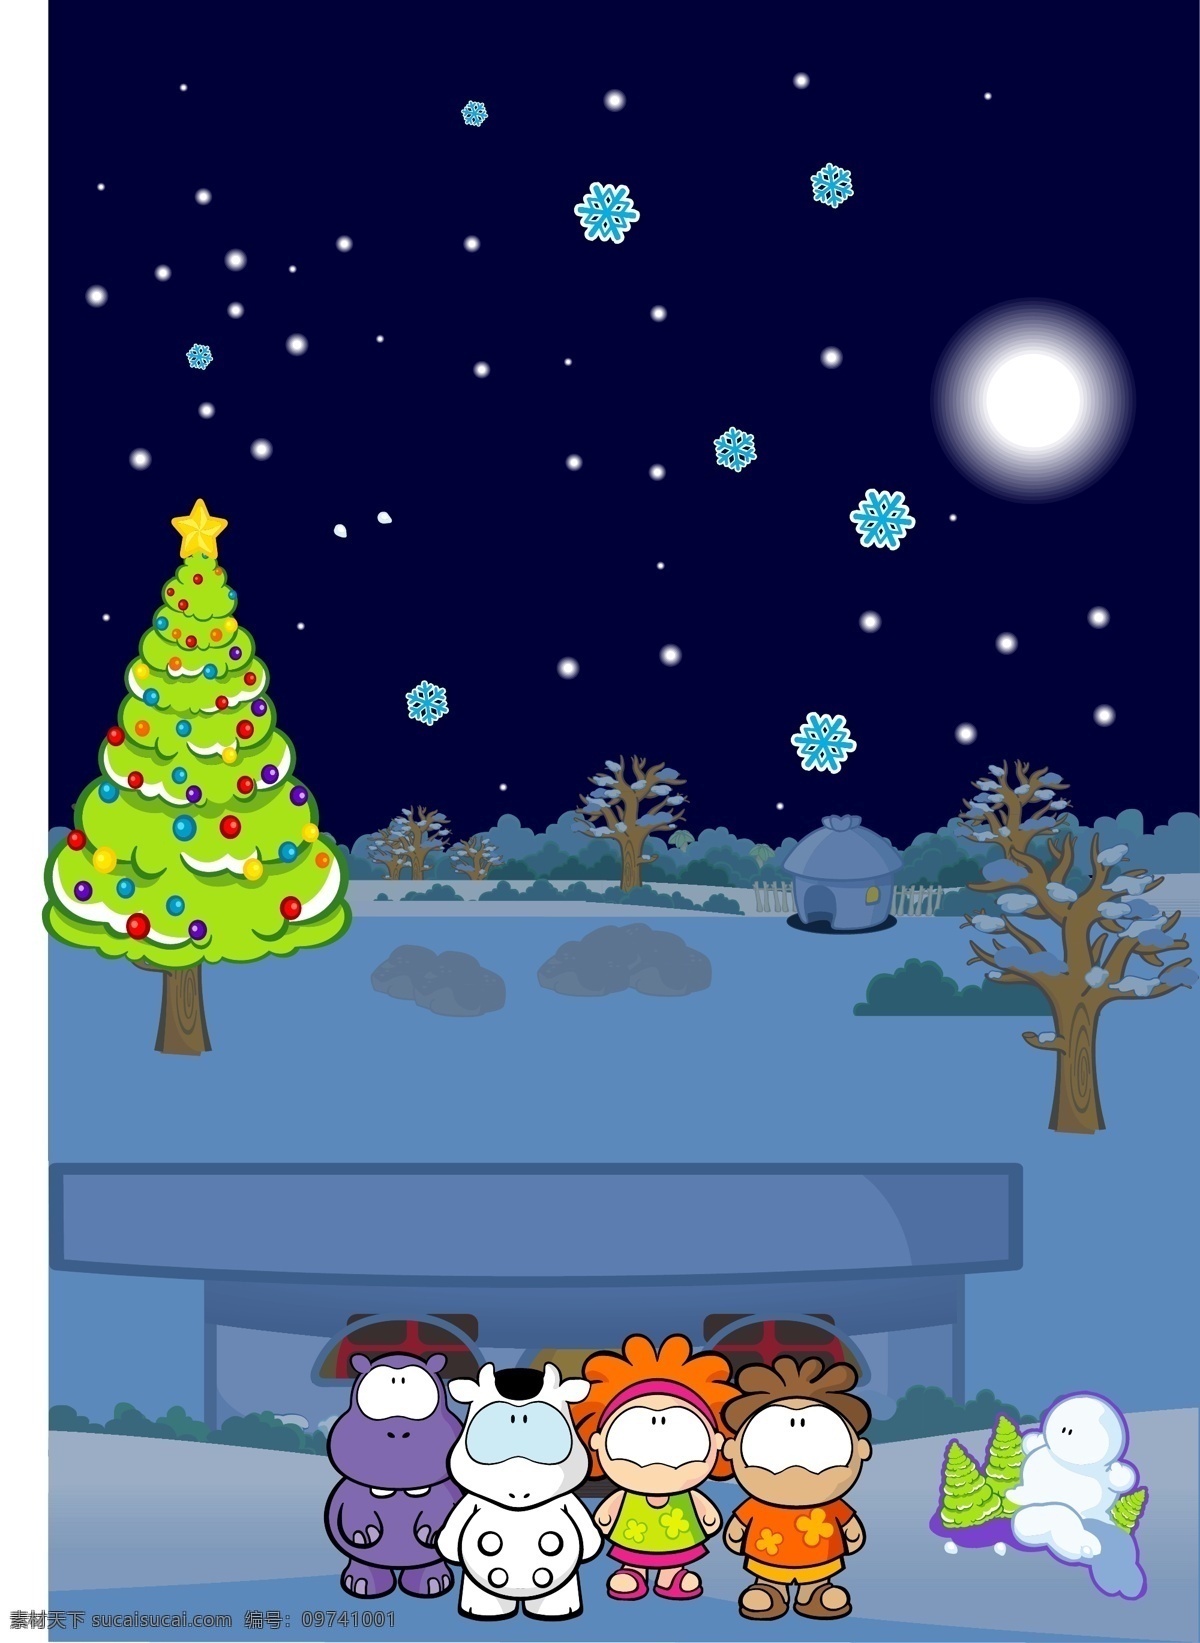 款 圣诞 主题 可爱 卡通 动物 矢量 商业矢量 矢量卡通 矢量下载 网页矢量 矢量图 其他矢量图